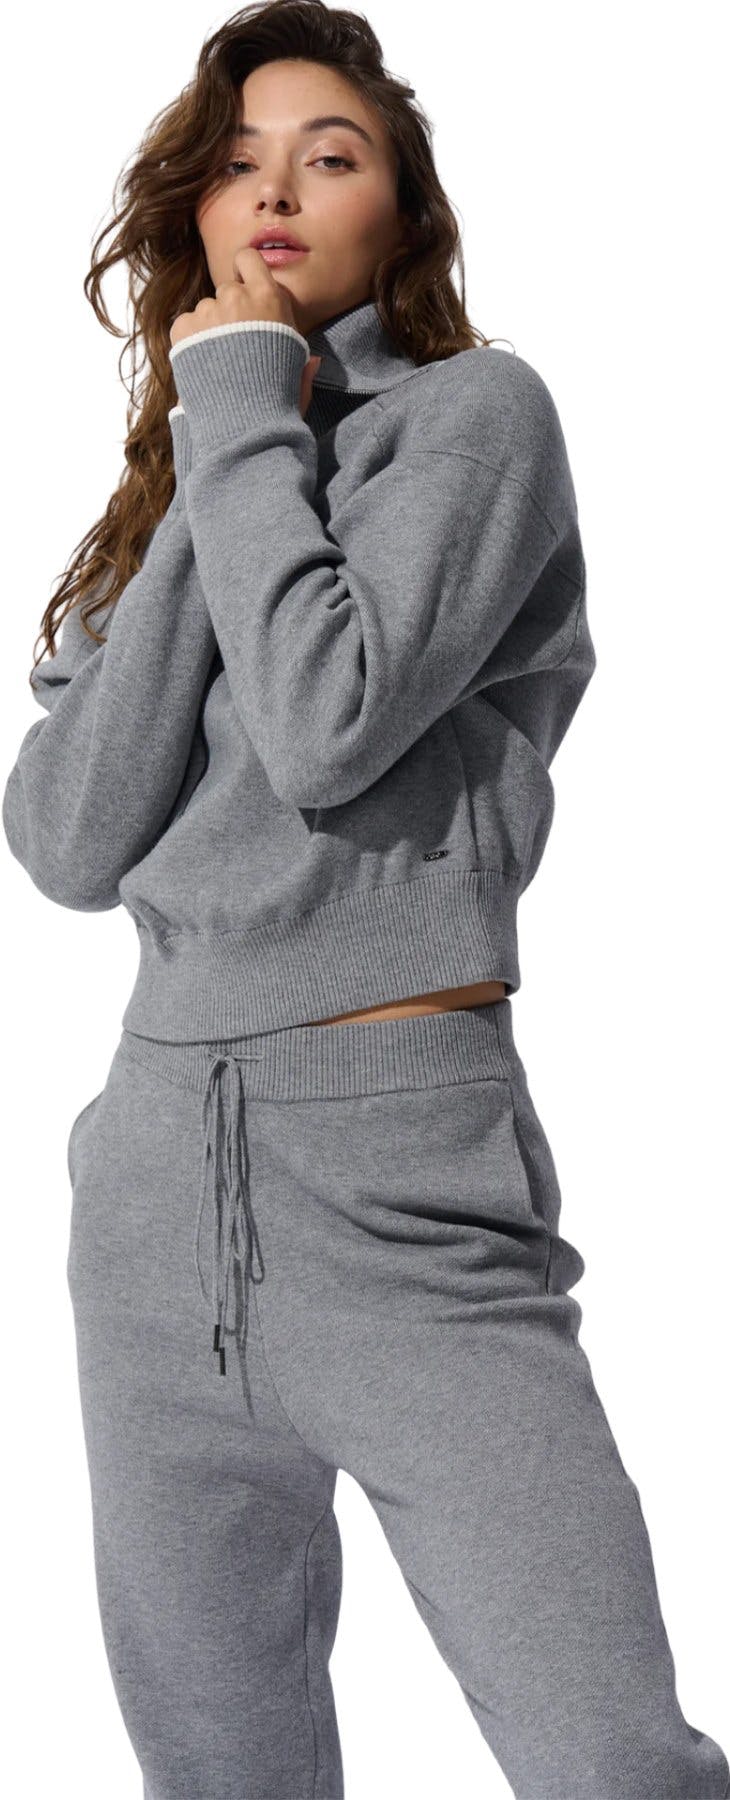 Numéro de l'image de la galerie de produits 3 pour le produit Pantalon de jogging en tricot - Femme